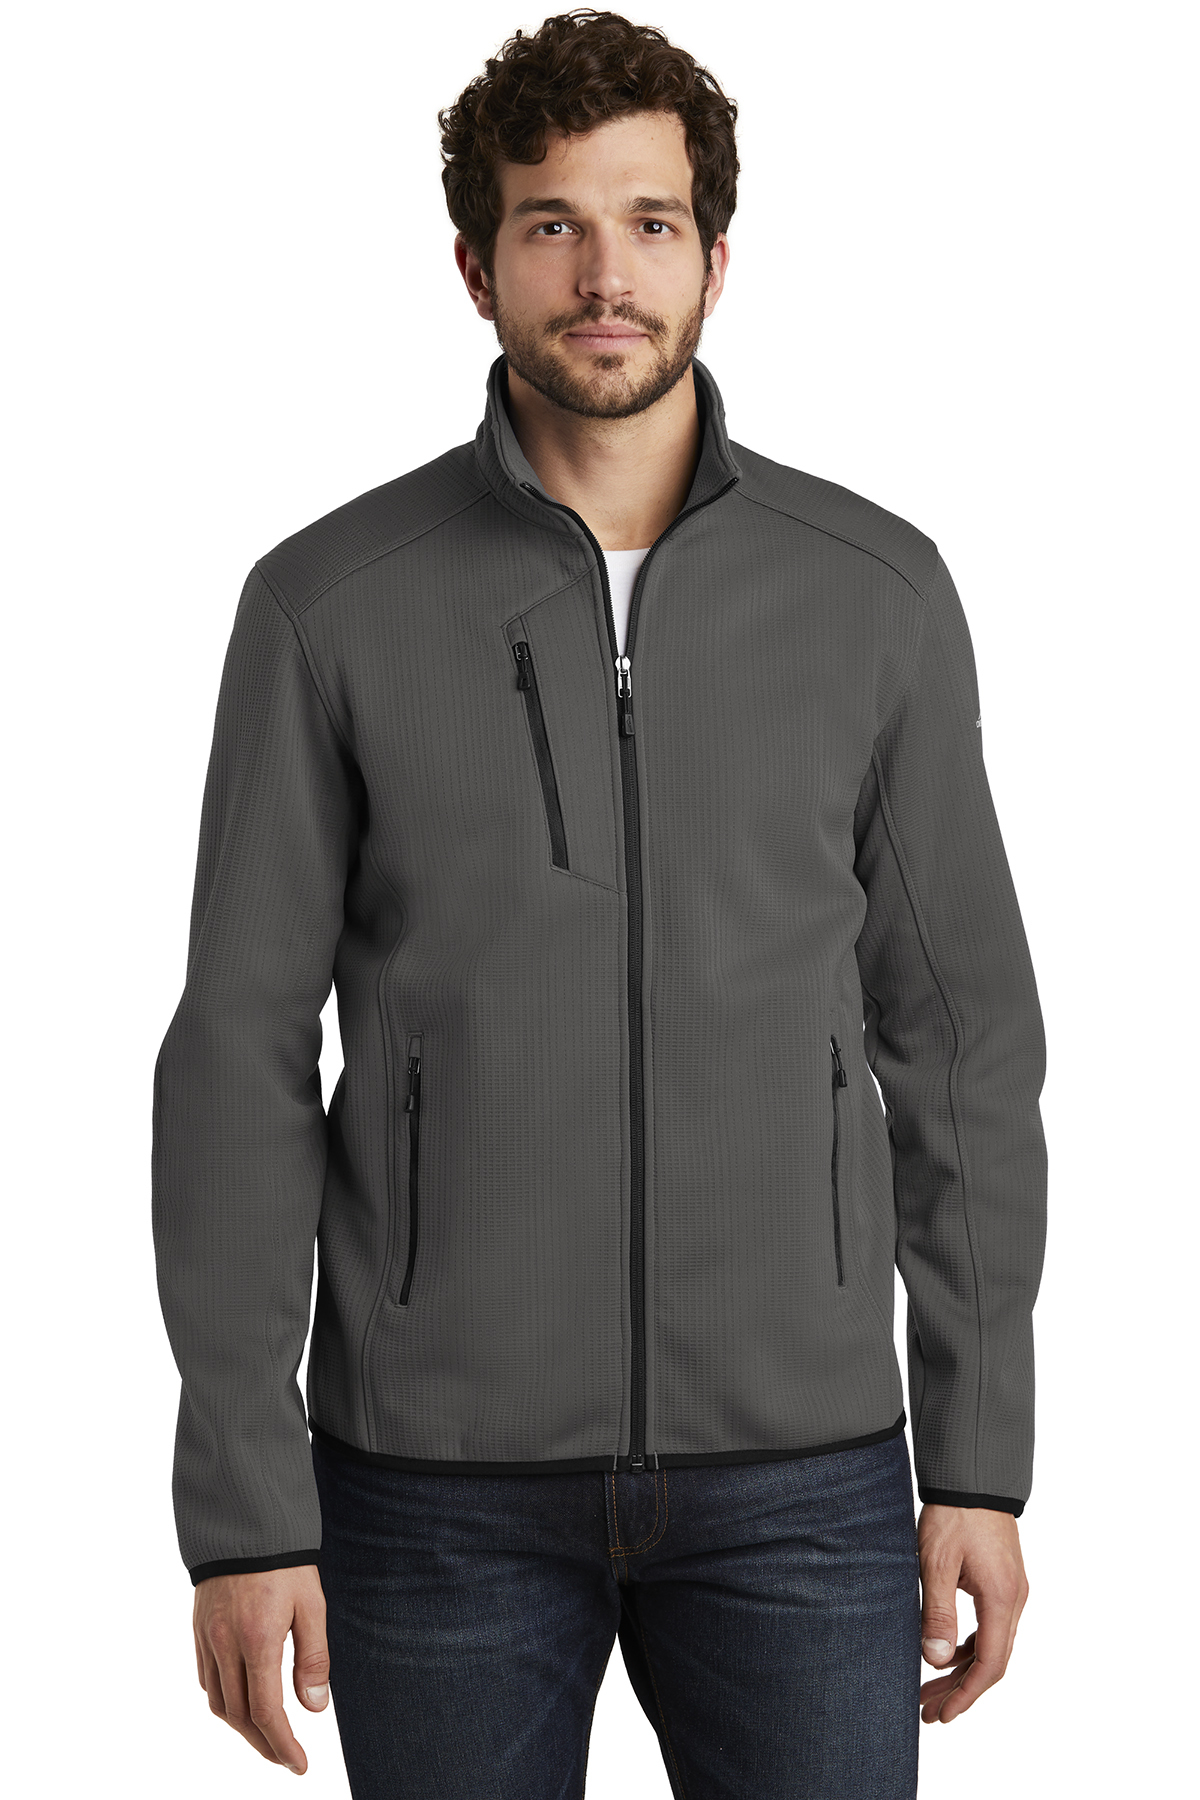 Eddie Bauer Dash Full-Zip Fleece Jacket | Product | Company Casuals